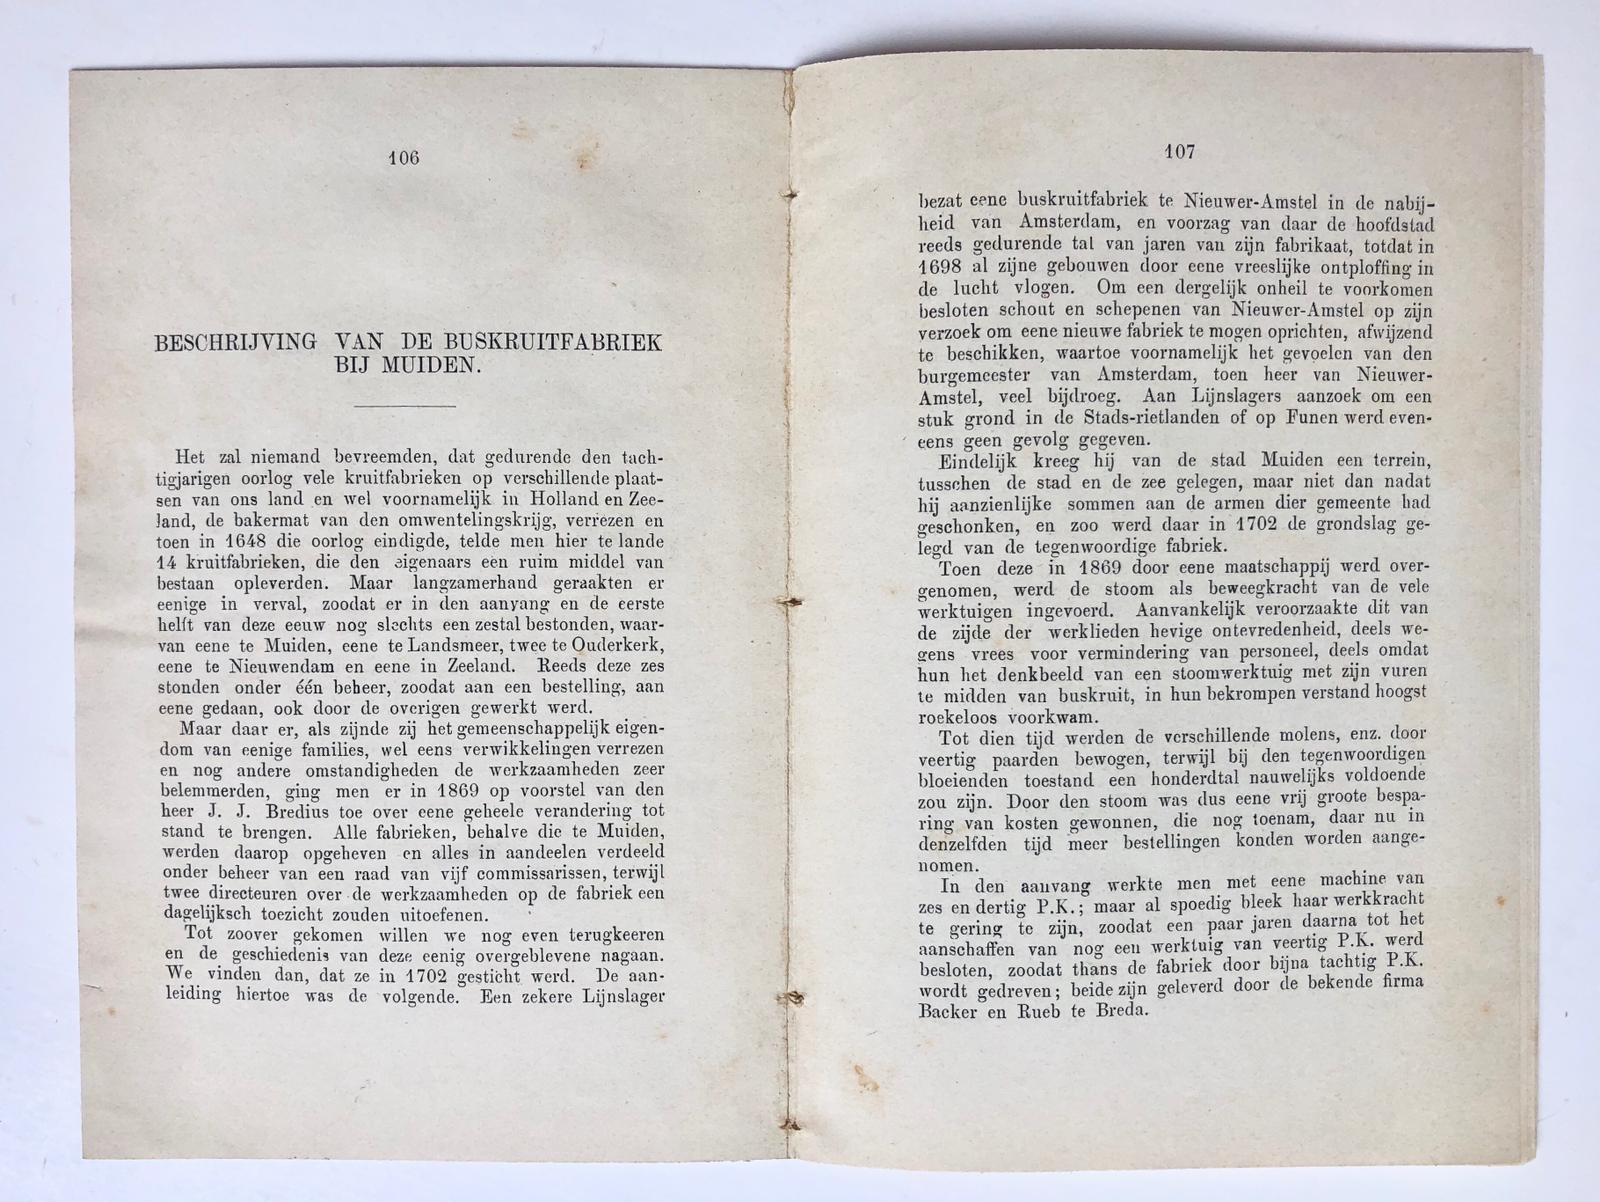 [Extract gunpowder factory Muiden, 1888] Extract uit Jaarboek Adelborsten 1888, met artikel door R. Posthumus Meijjes 'Beschrijving van de buskruitfabriek bij Muiden', pp. 106-116, gedrukt.